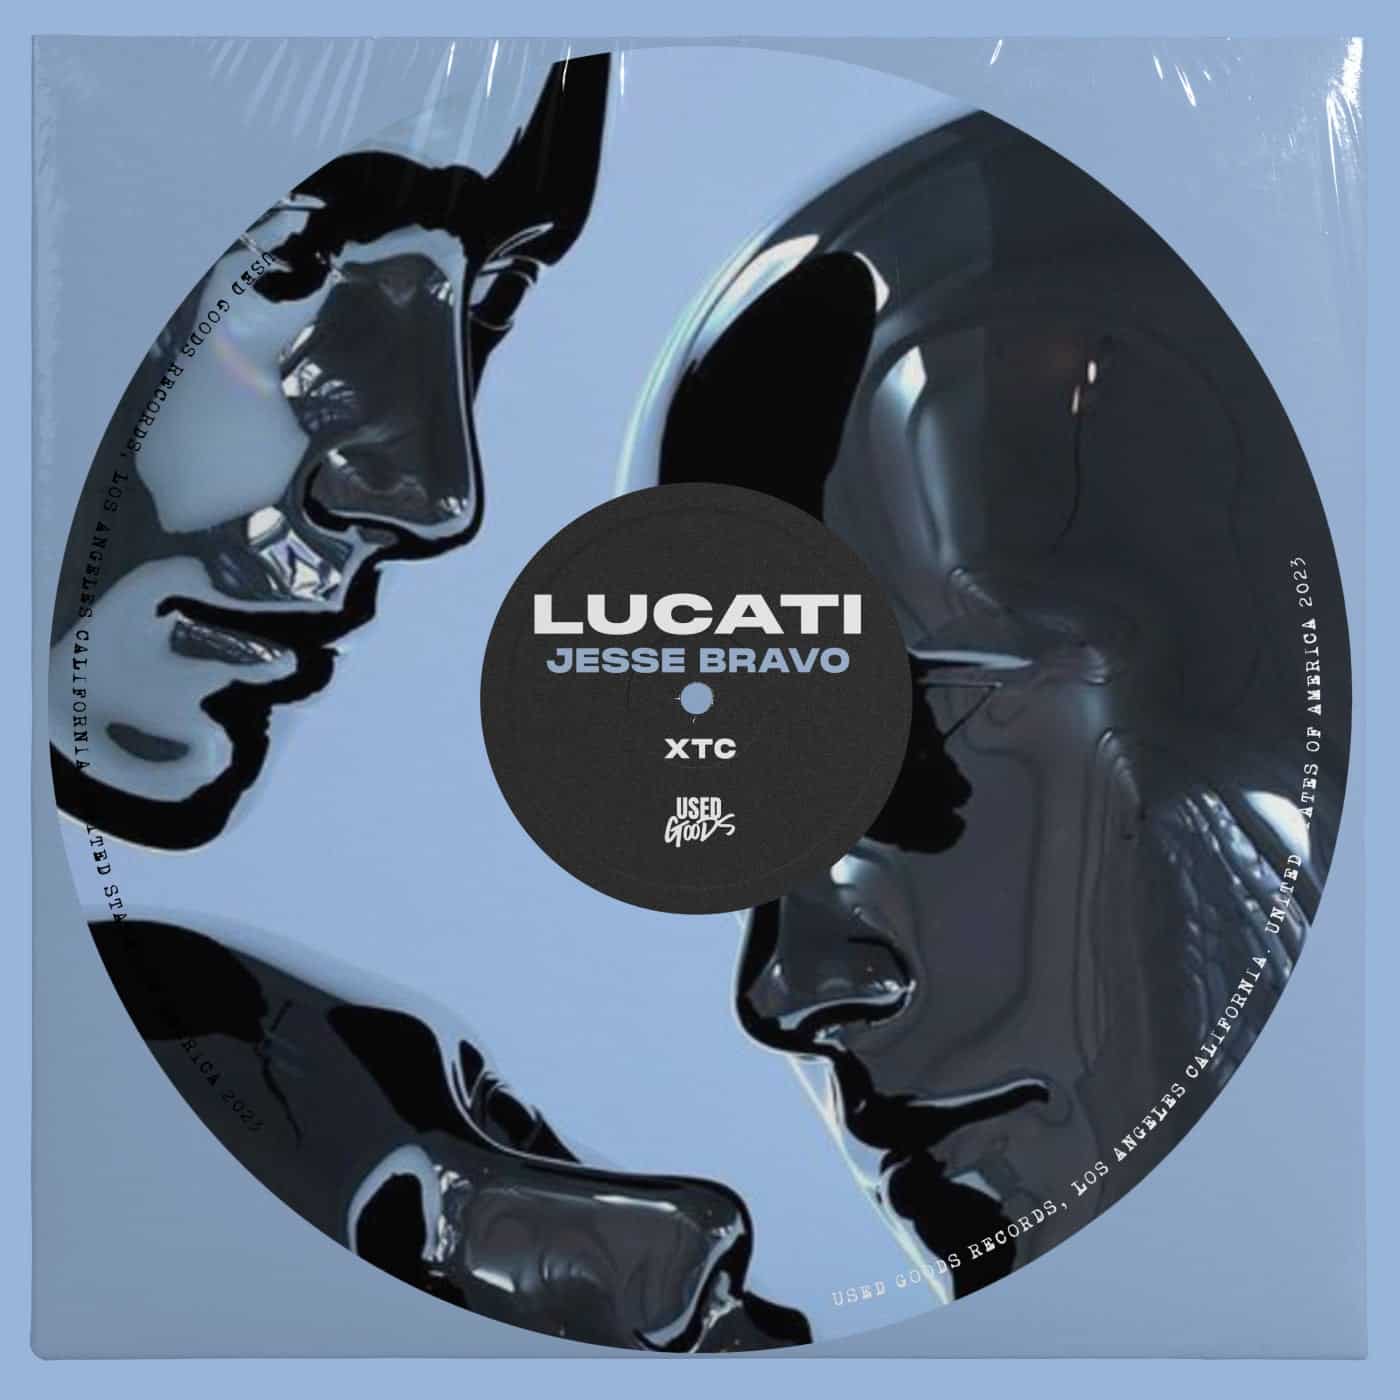 Download LUCATI, Jesse Bravo - XTC on Electrobuzz